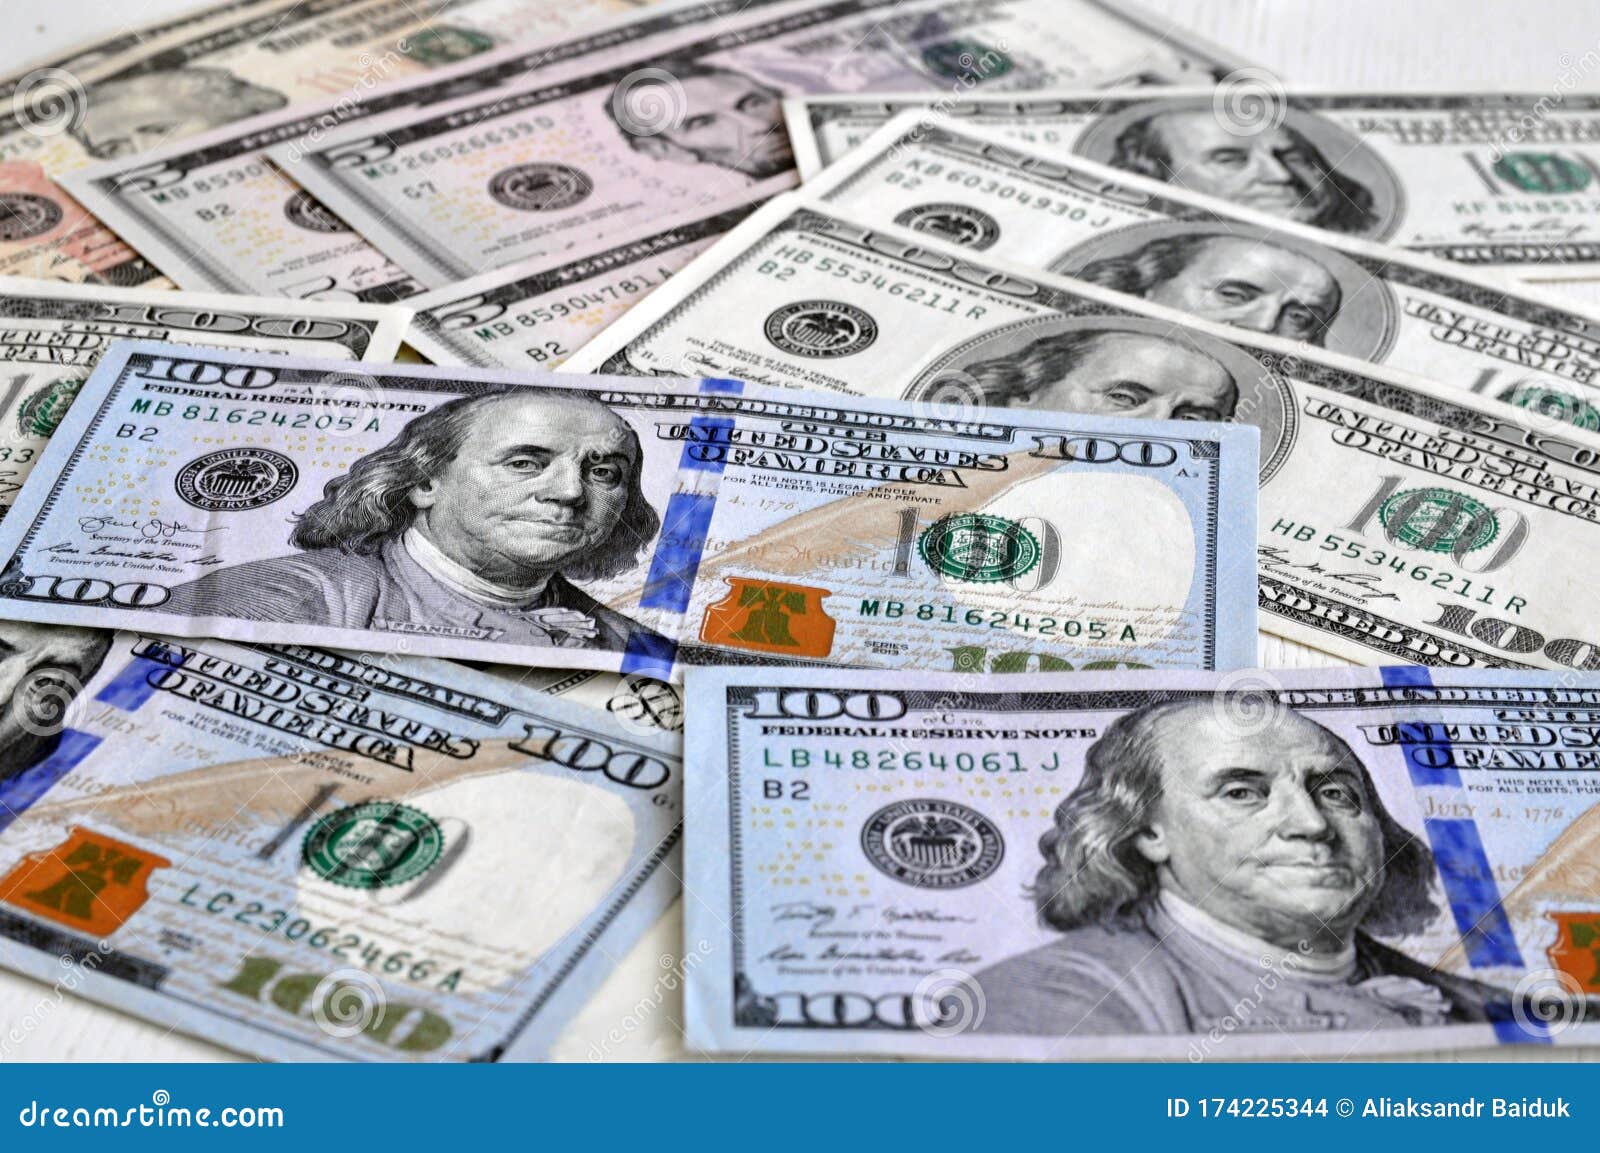 Pilha de notas de dez dólares do fundo da moeda dos estados unidos